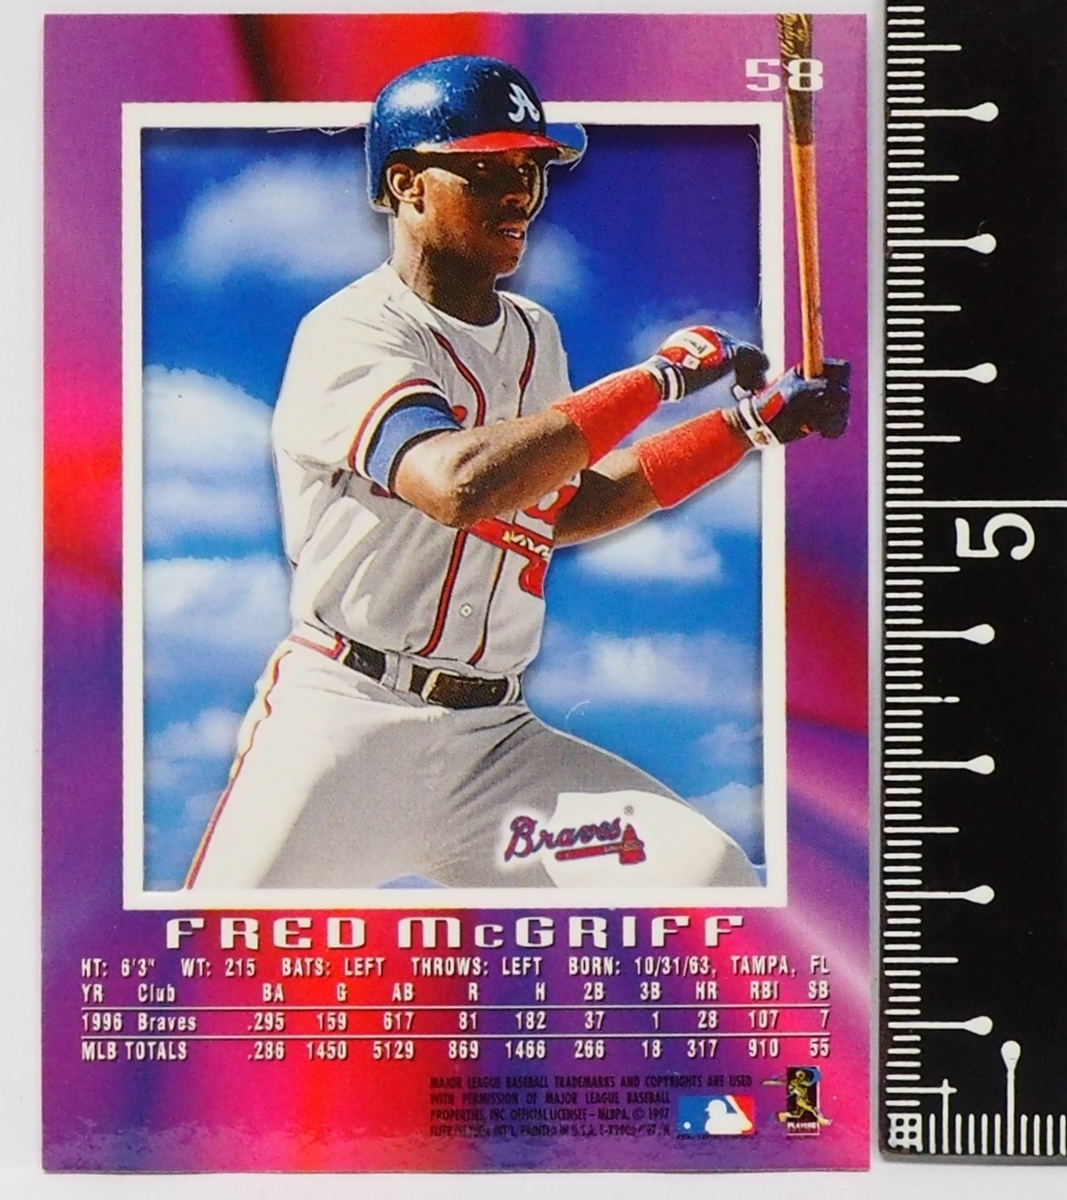 FLEER Skybox EX2000 #58【Fred McGriff(ATLANTA BRAVES・1B)】1997年MLBメジャーリーグ野球カードBaseball CARDフリーア【送料込】_画像2